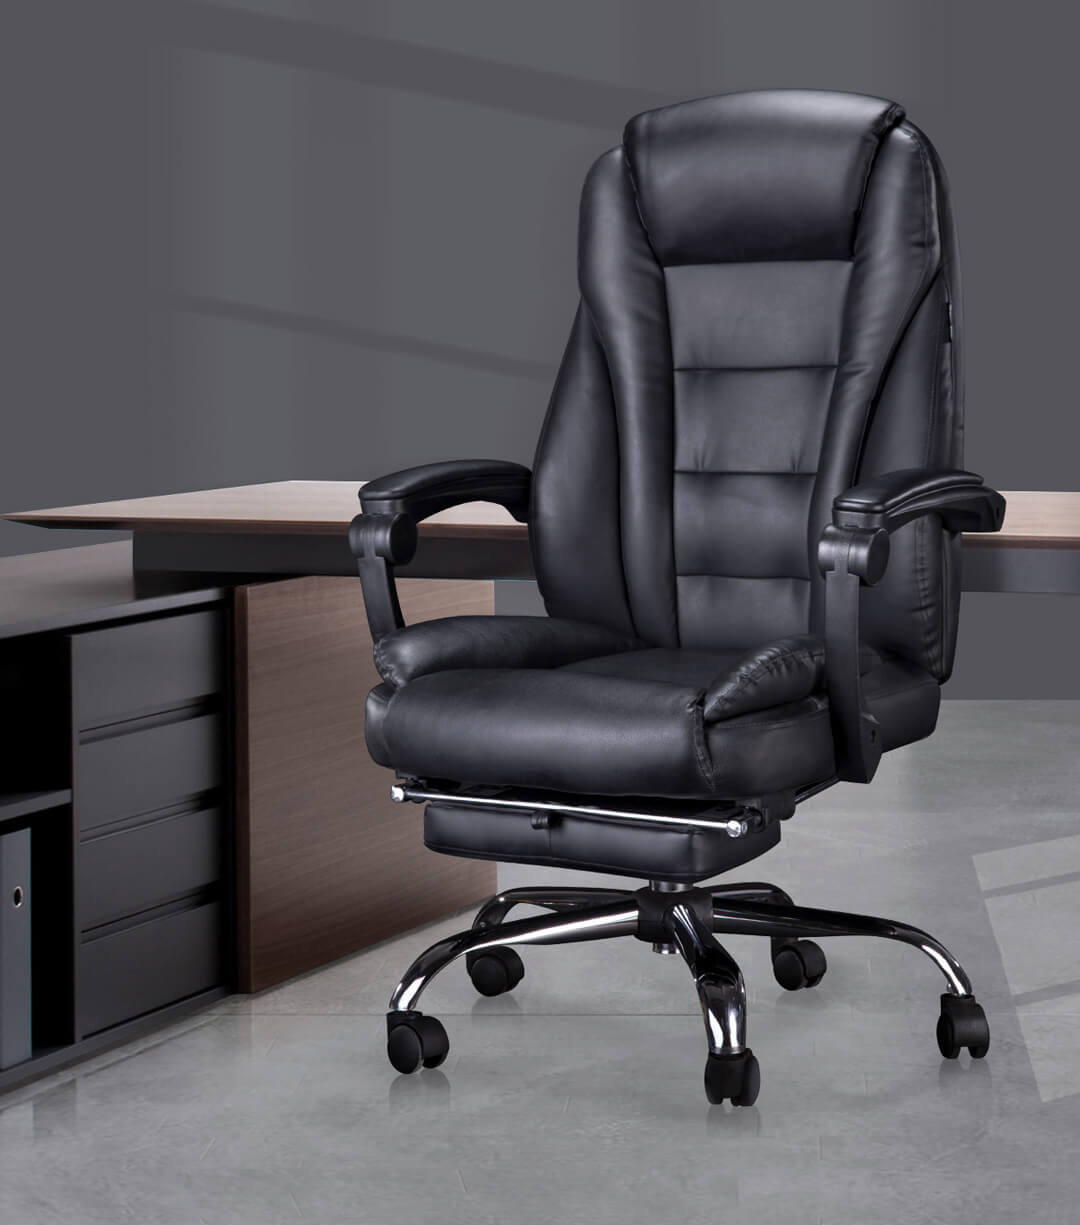 Hbada Office Boss Chair